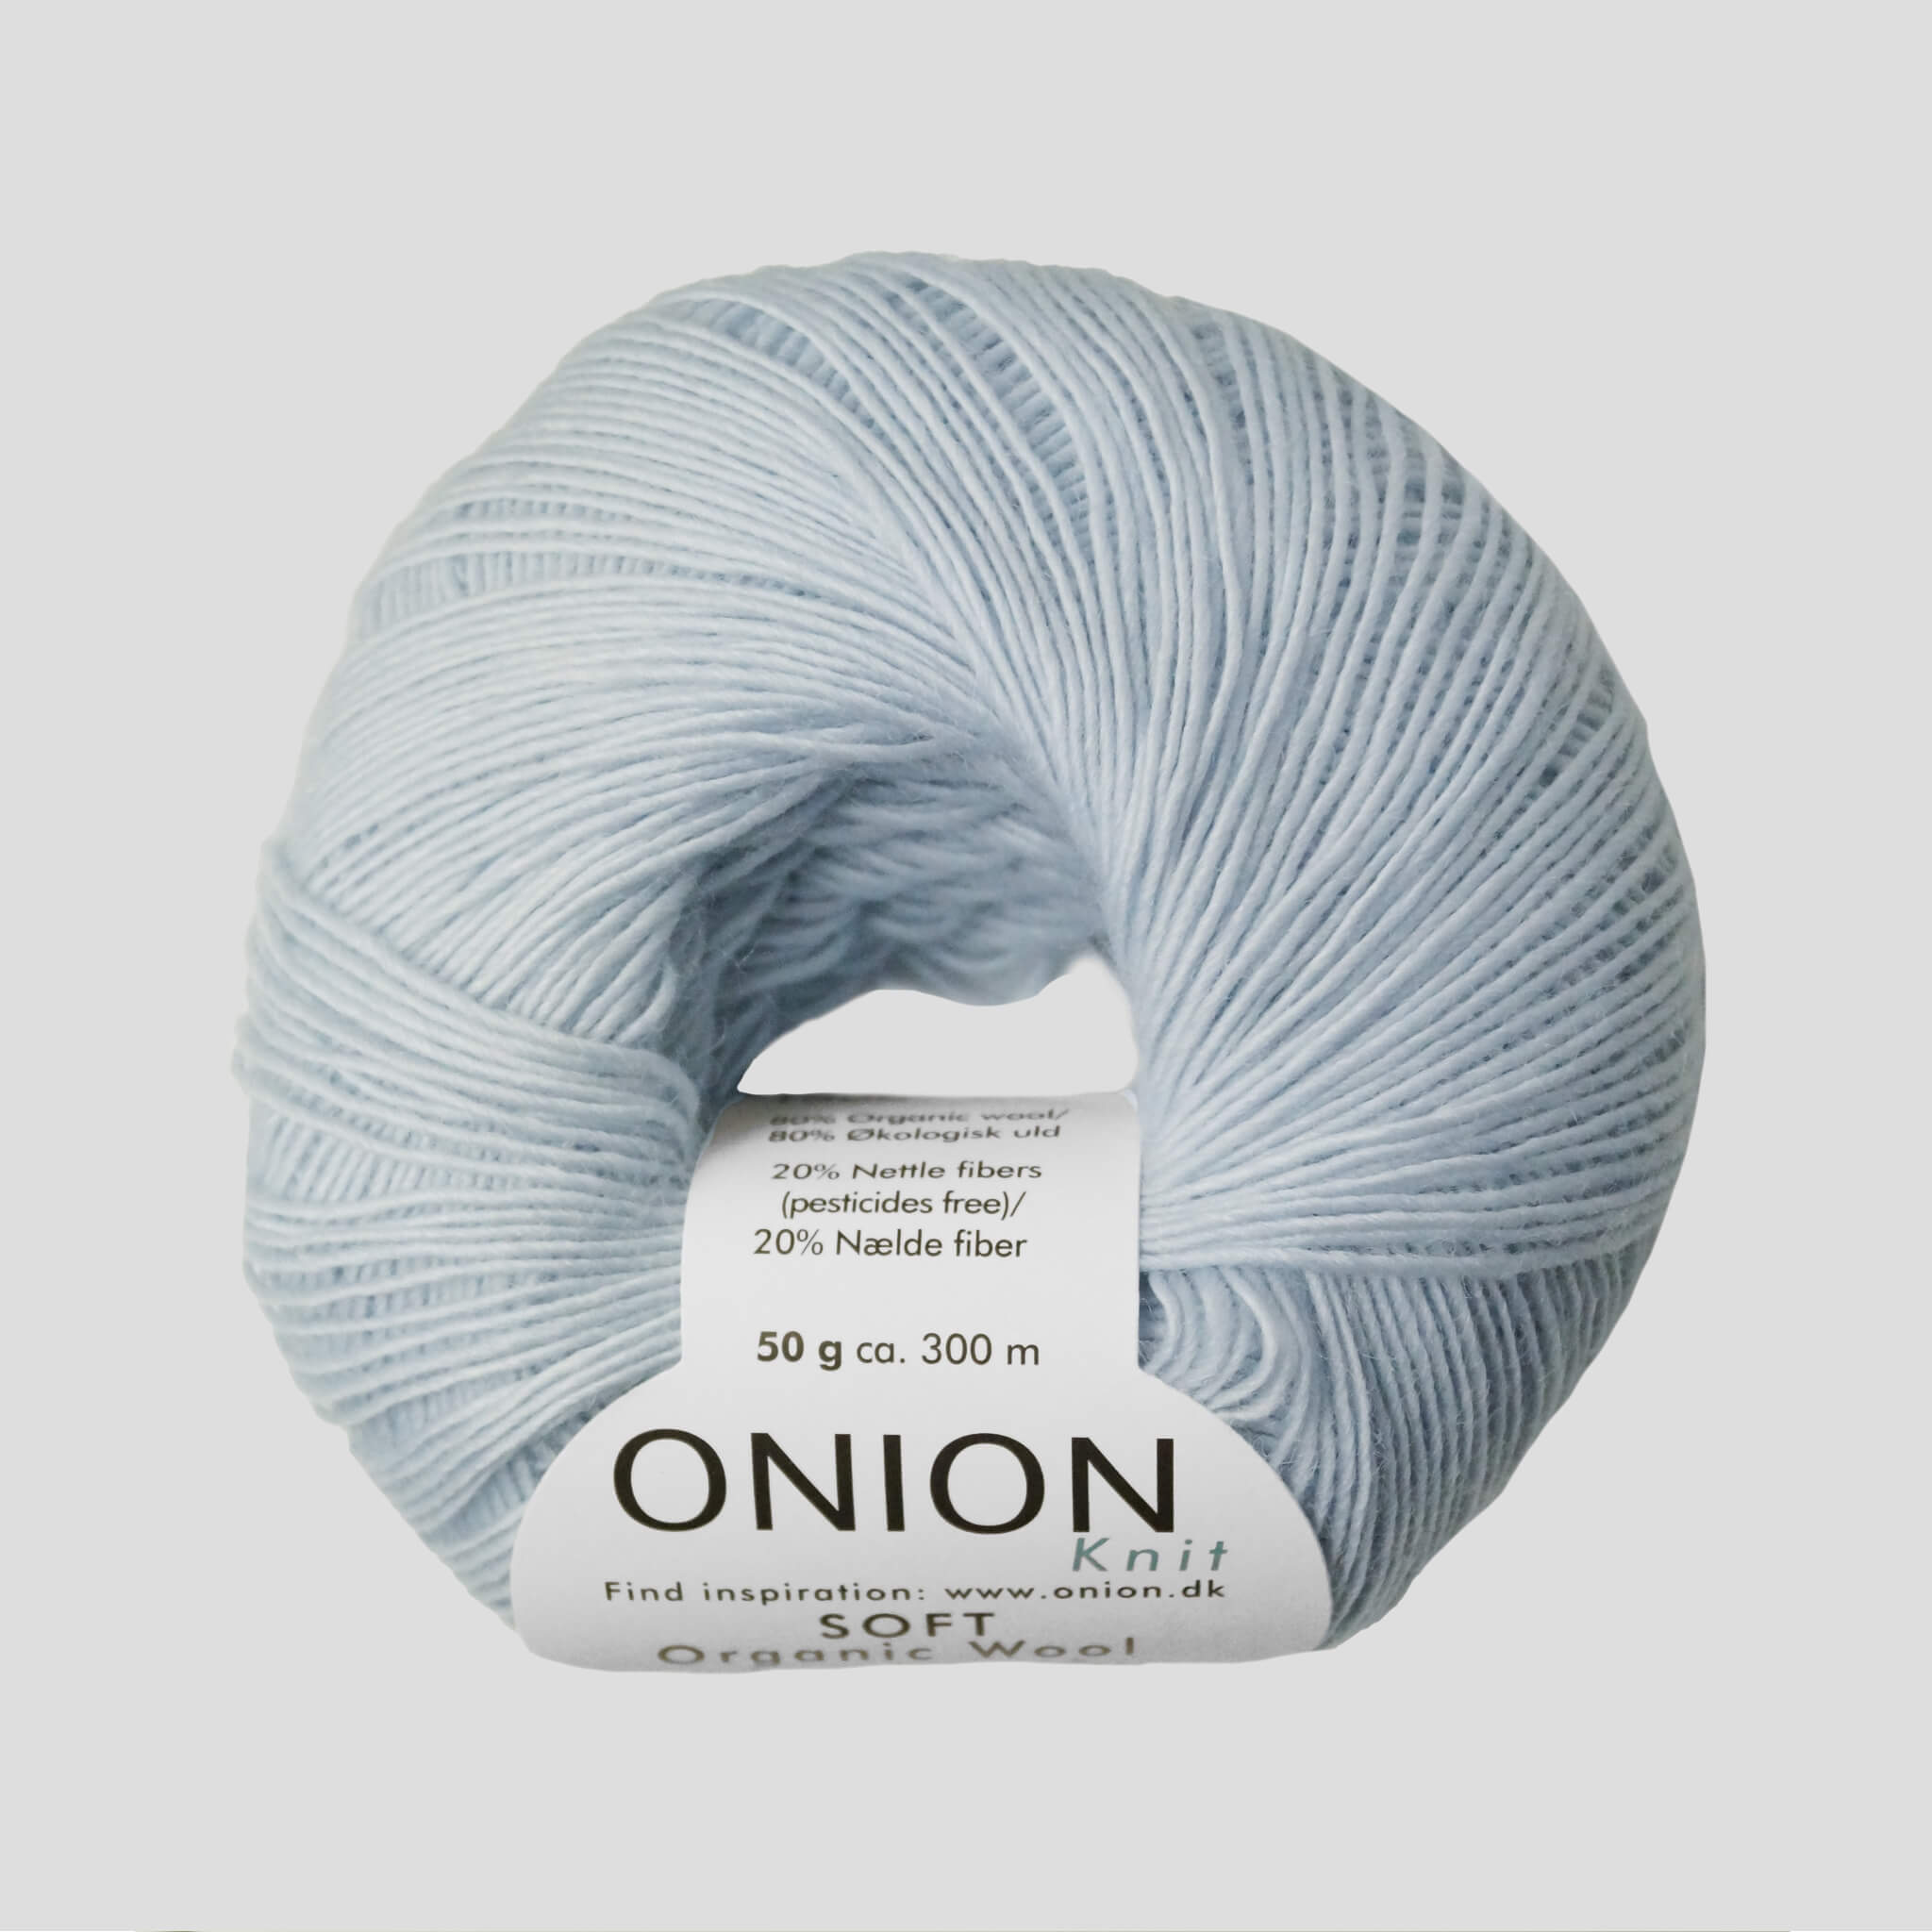 Onion Soft Organic Wool + Nettles - Onion Soft Organic Wool + Nettles 1506 Lys Grå | Onion | HobbyTilbud.dk